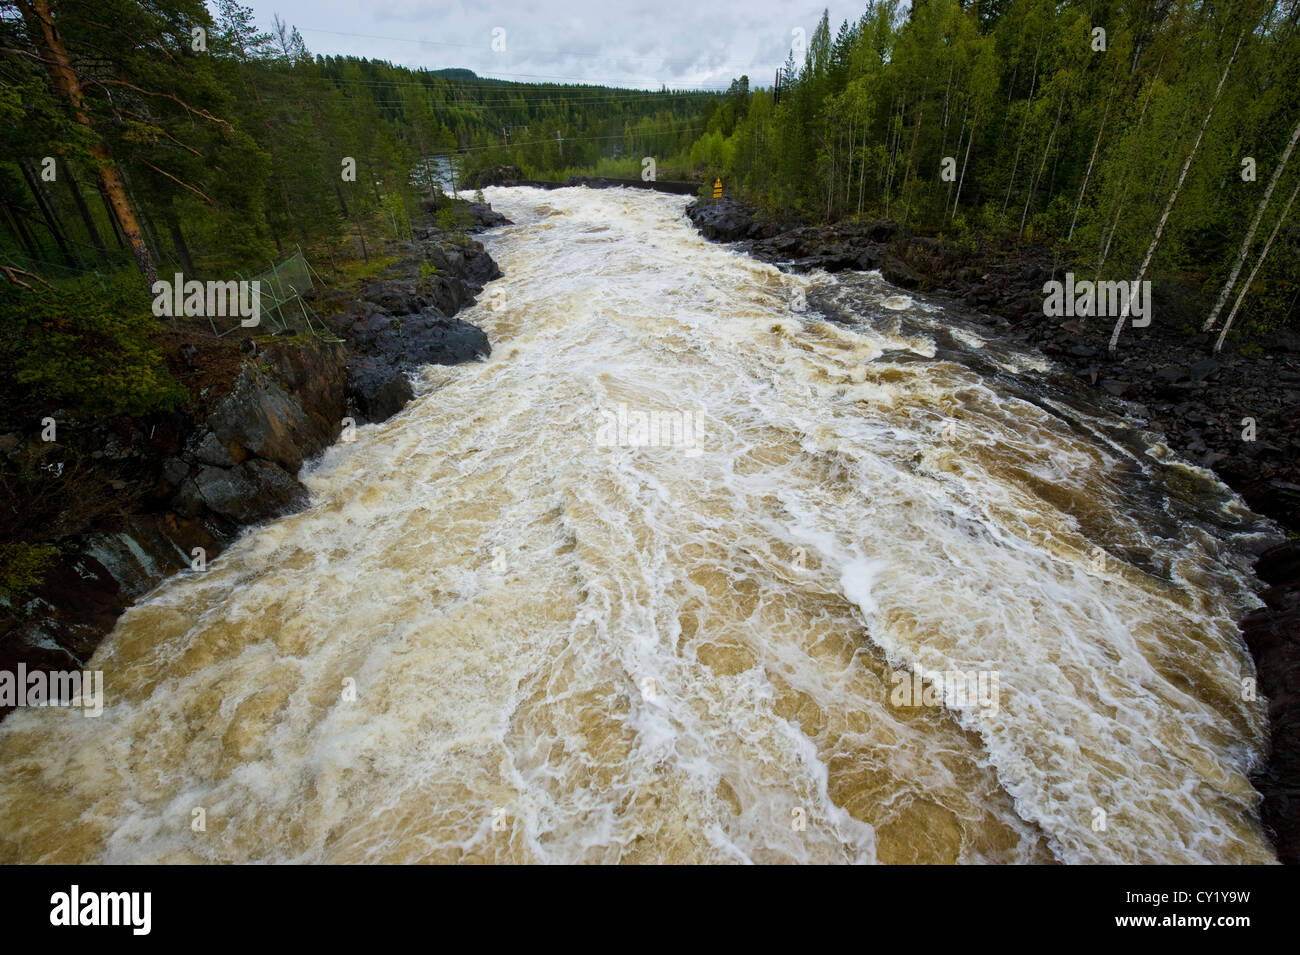 Skellefte River (Swedish: Skellefteälven or Skellefte älv) in northern Sweden, one of the major Norrland rivers. Stock Photo